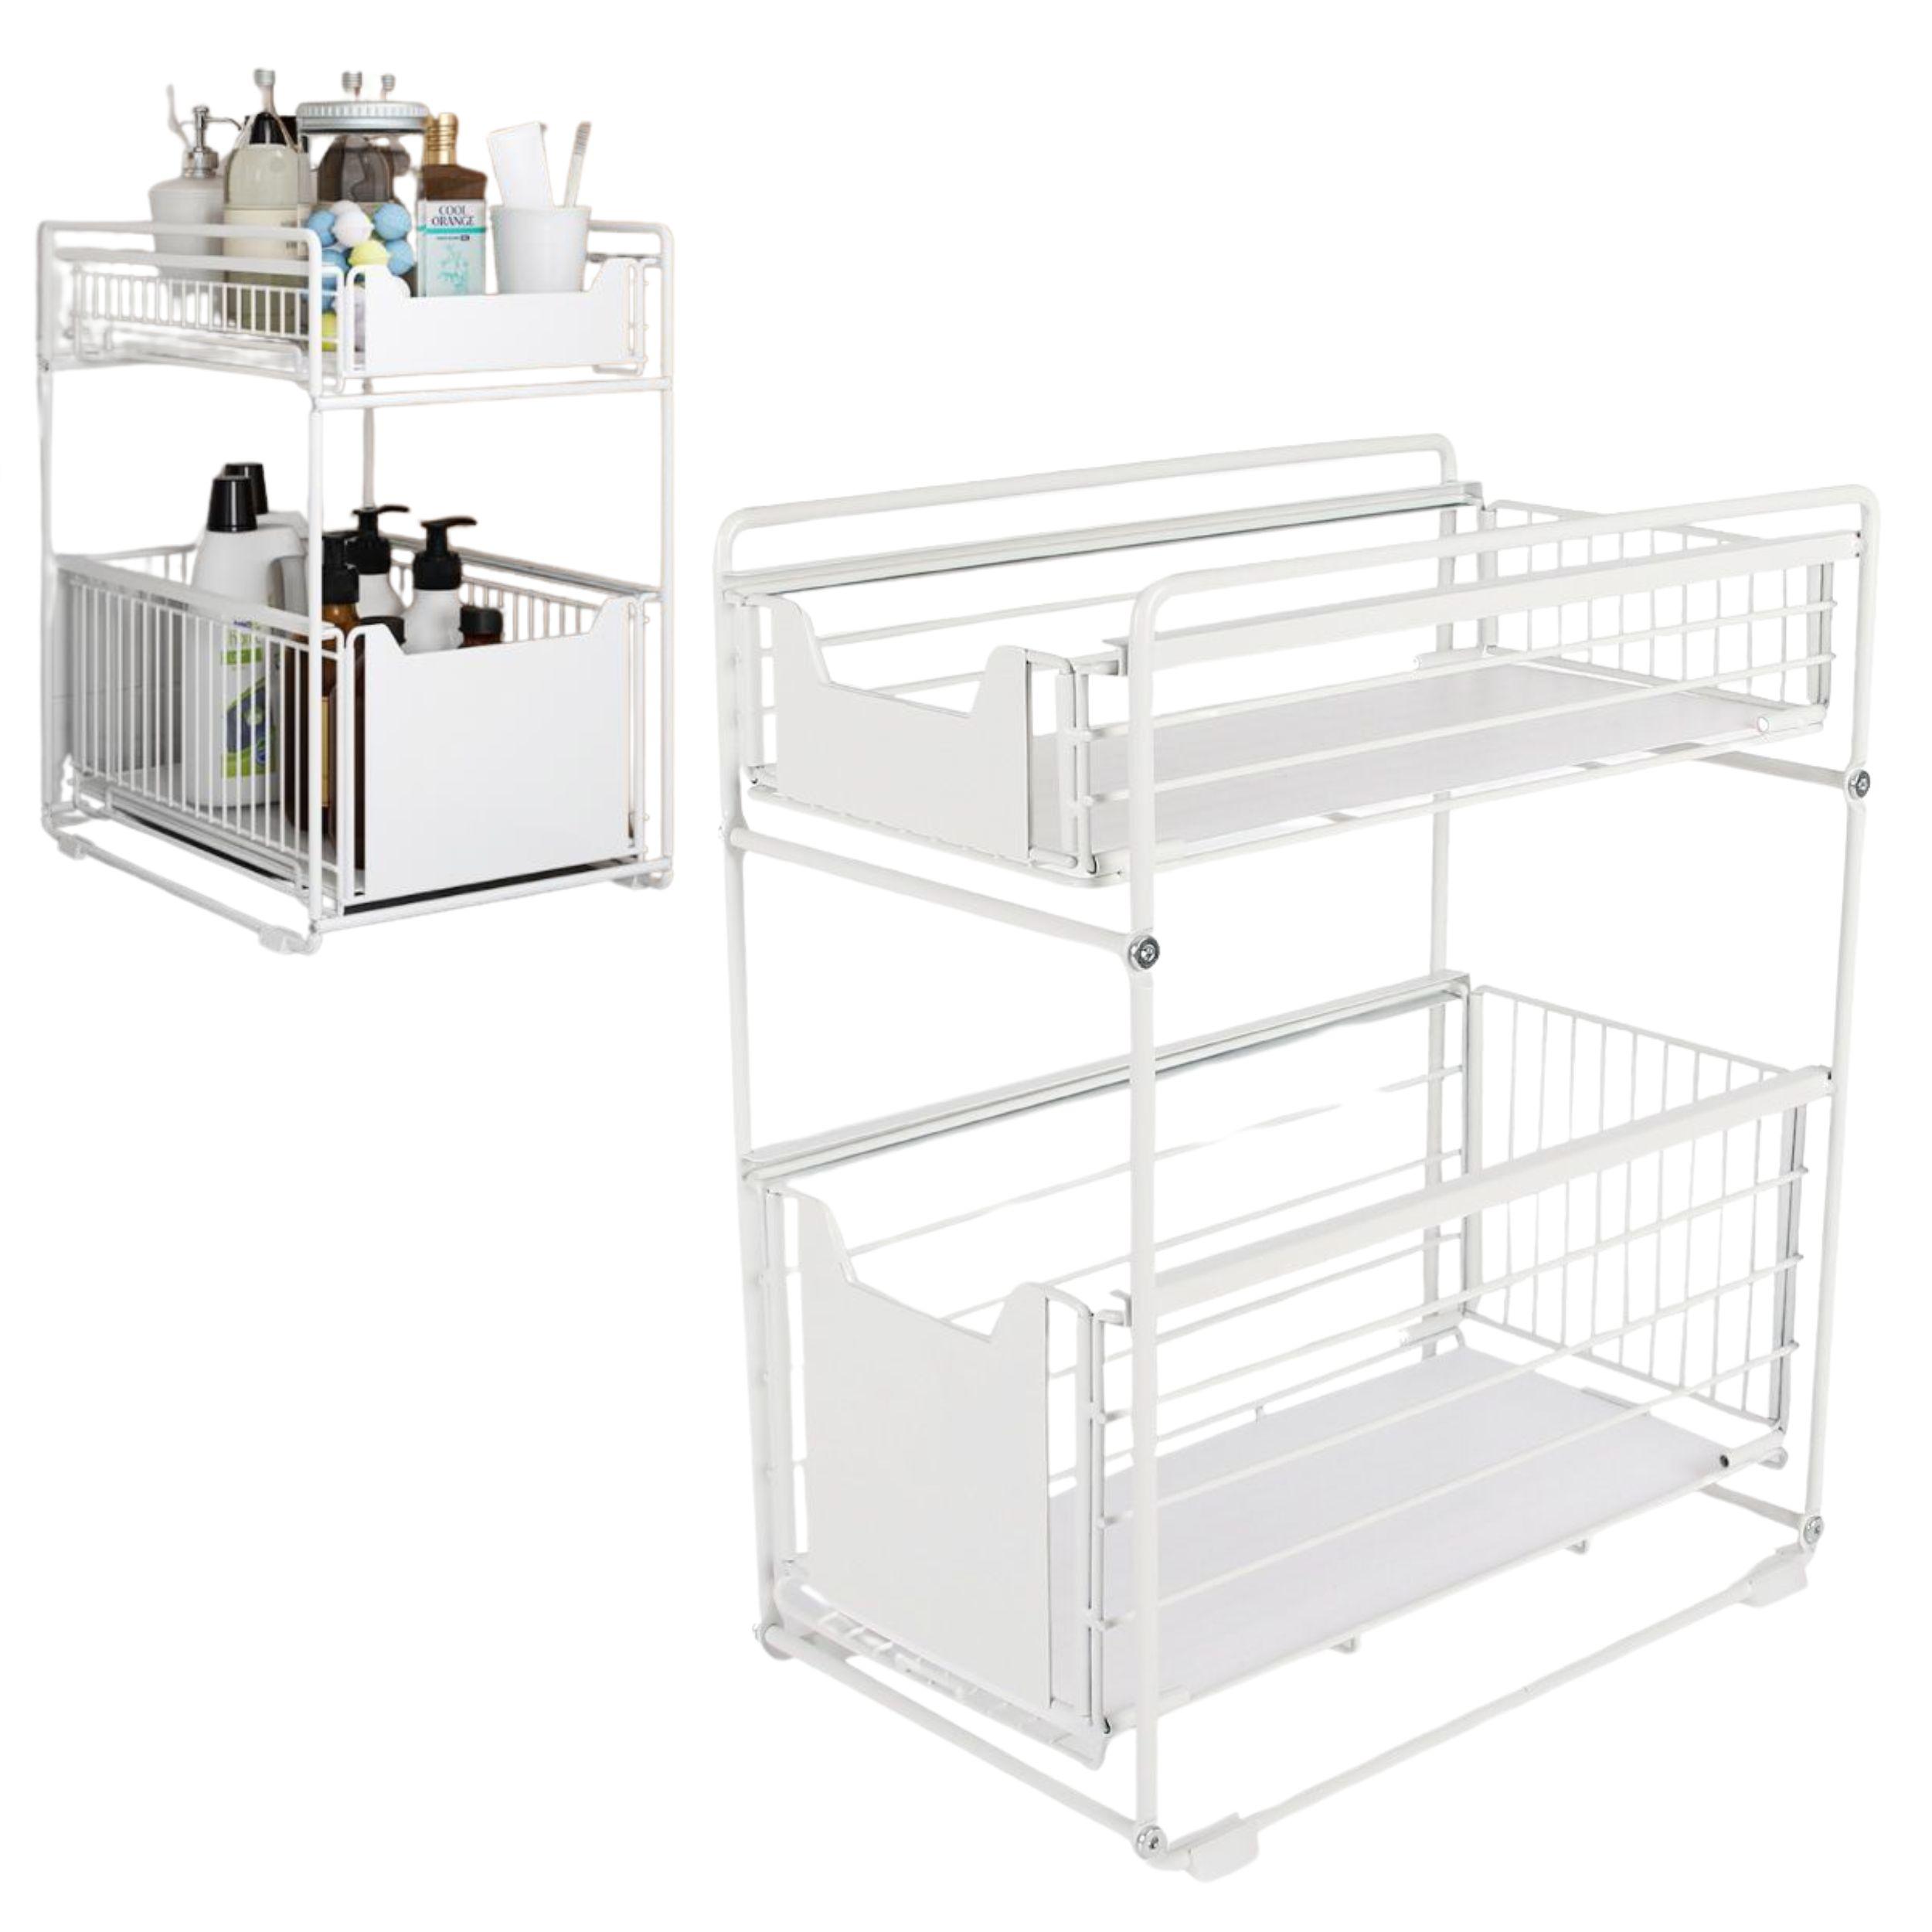 Kitchen organizer with two spacious shelves - white